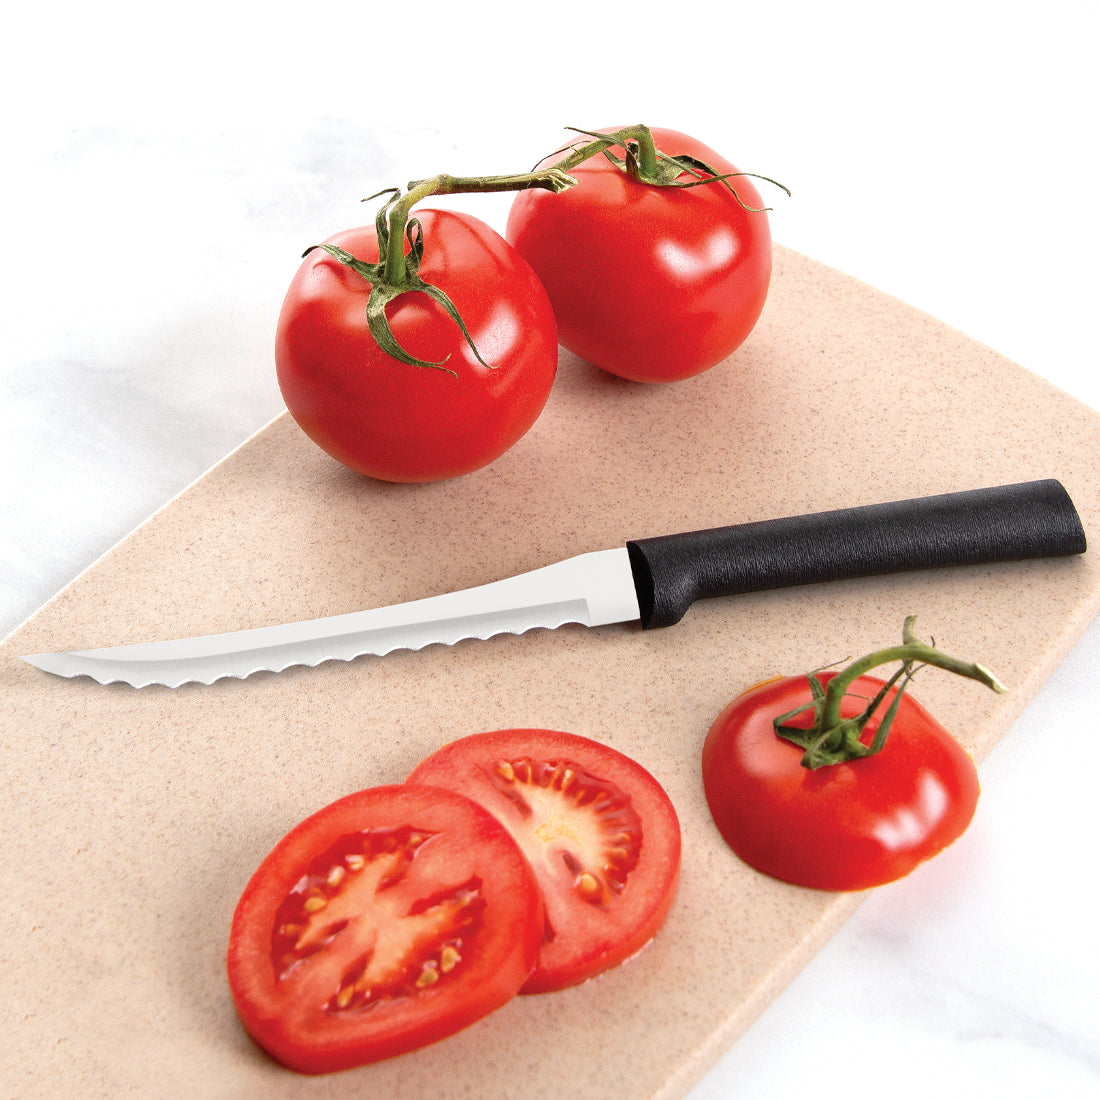 Rada Cutlery Anthem Tomato Slicer